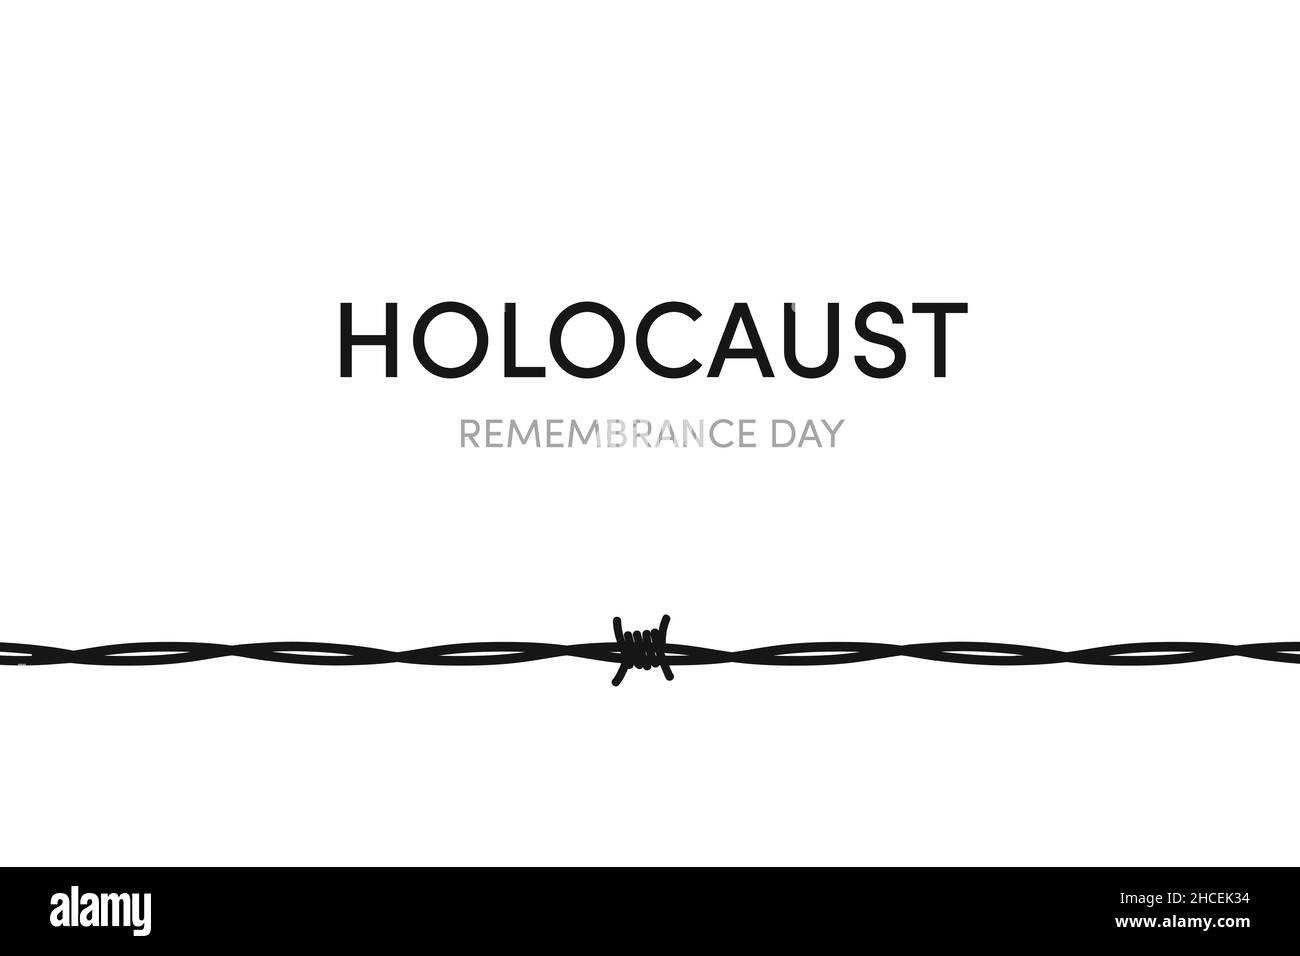 Illustration du jour du souvenir de l'Holocauste.Fil barbelé sur fond blanc.Souvenez-vous de l'affiche de la Journée internationale de l'Holocauste, papier peint.Janvier 27 Banque D'Images